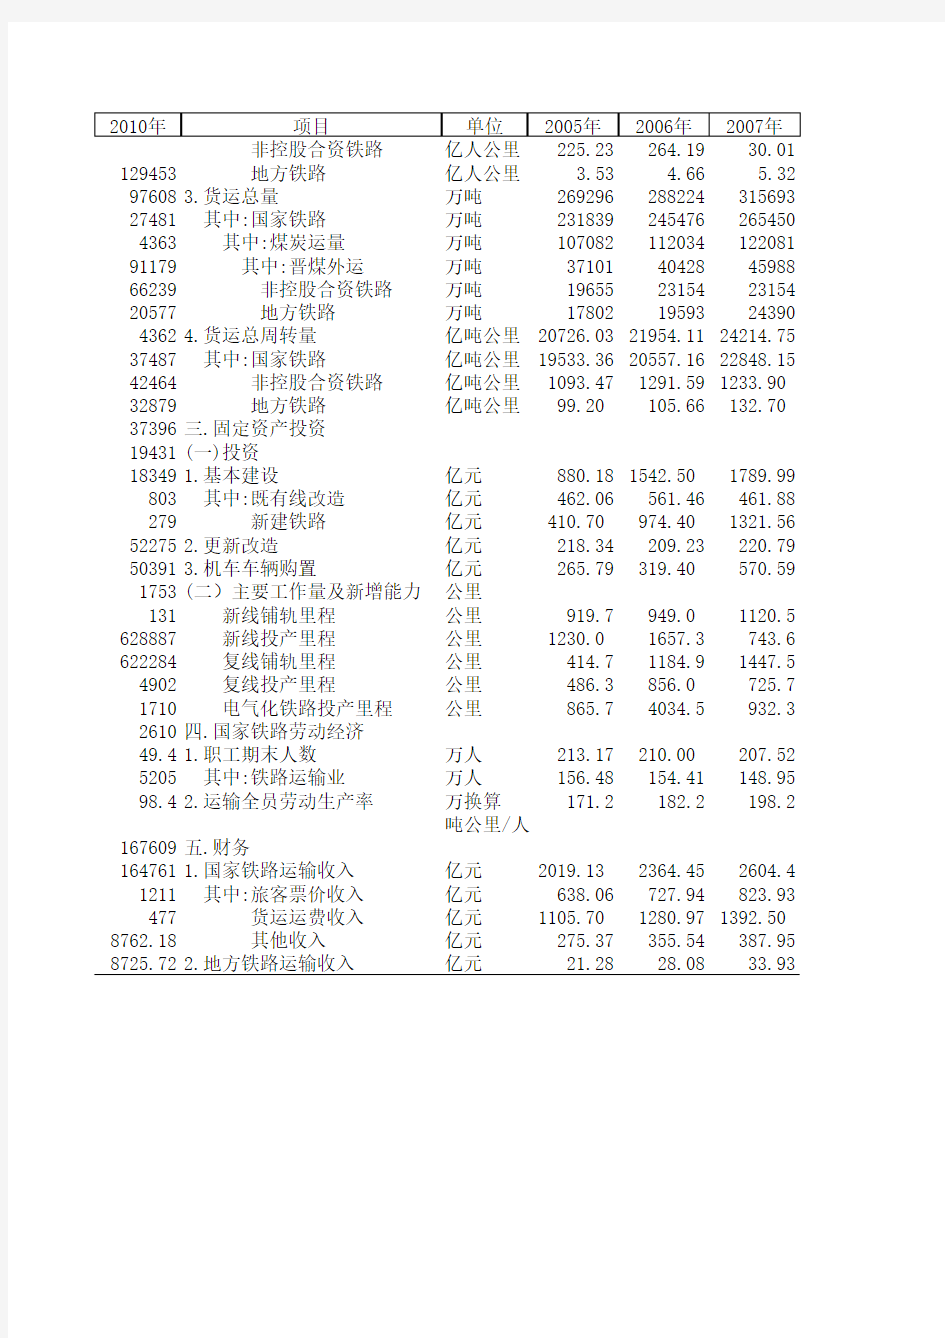 全国铁路主要指标基本情况(2009-2010年)(1)